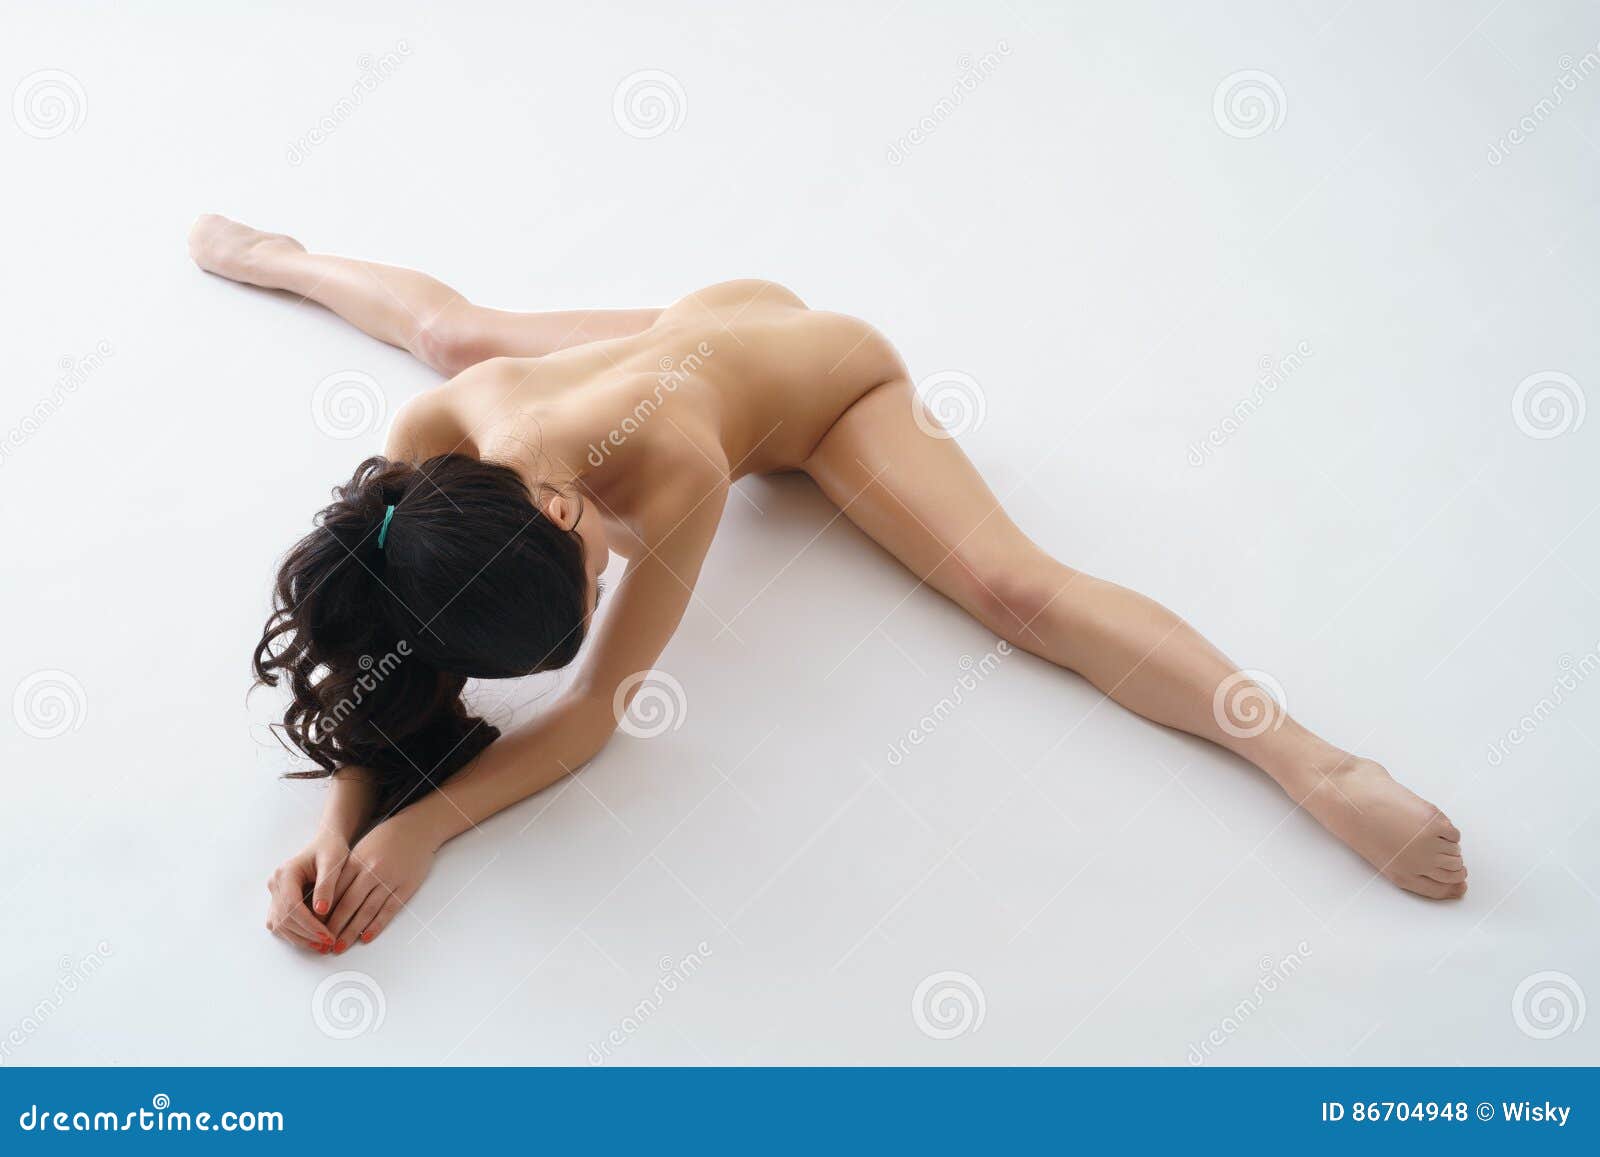 Abigail Breslin Boobs Naked Leg Split Photos